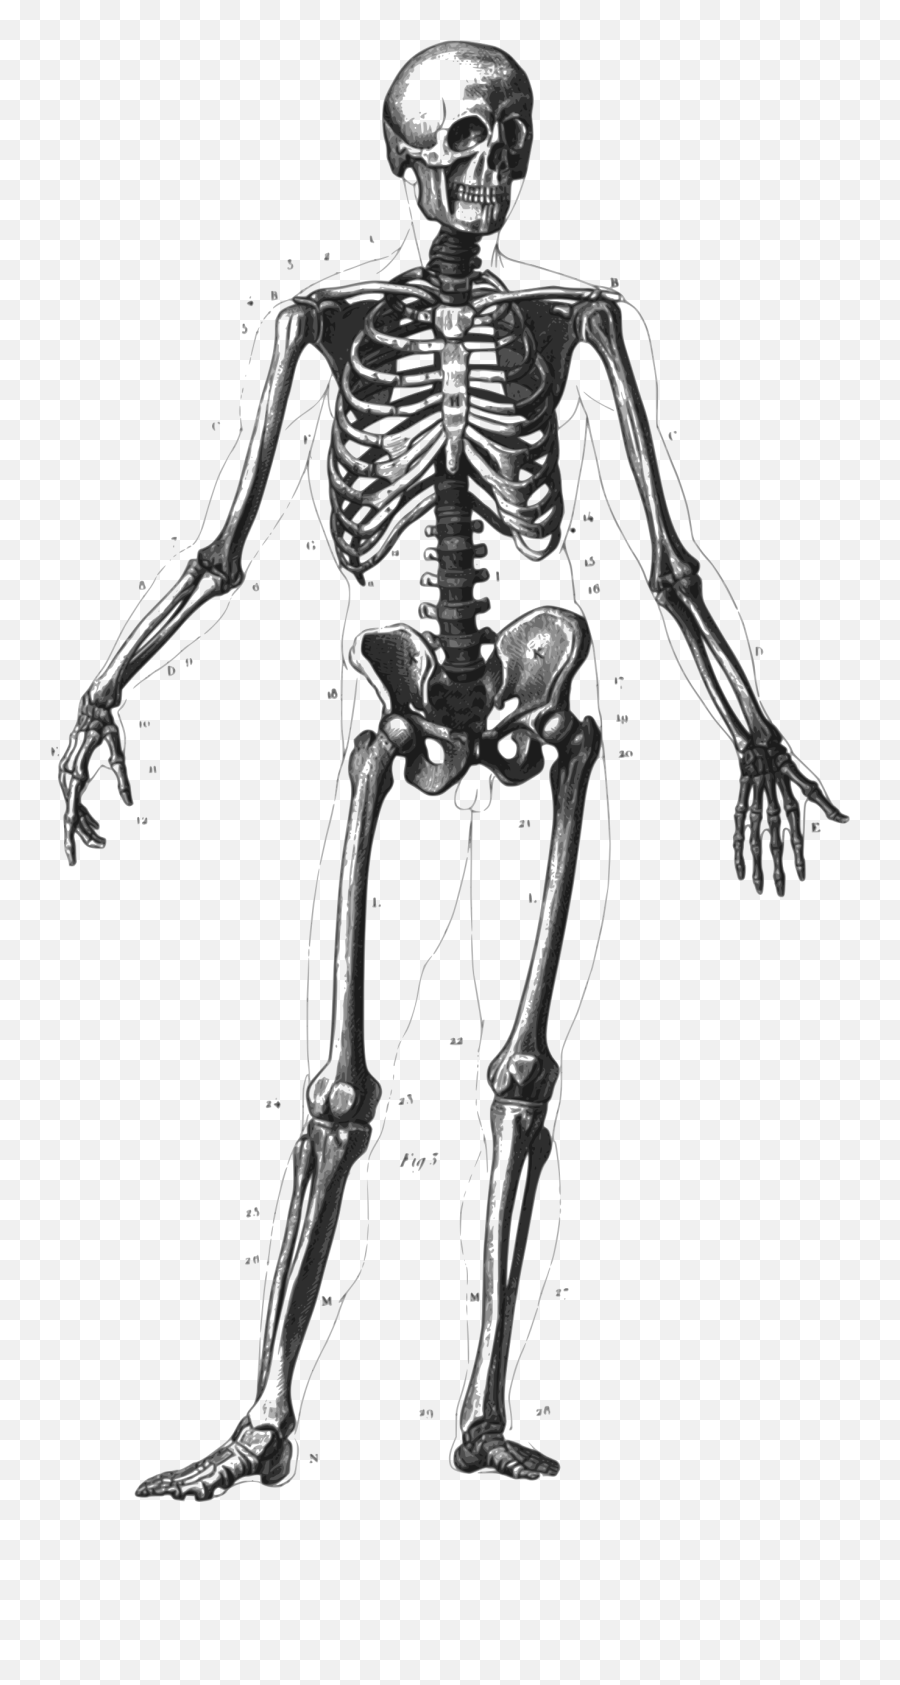 Free Skeleton Clip Art Pictures - Clipartix Human Skeleton Diagram Png,Skeleton Png Transparent